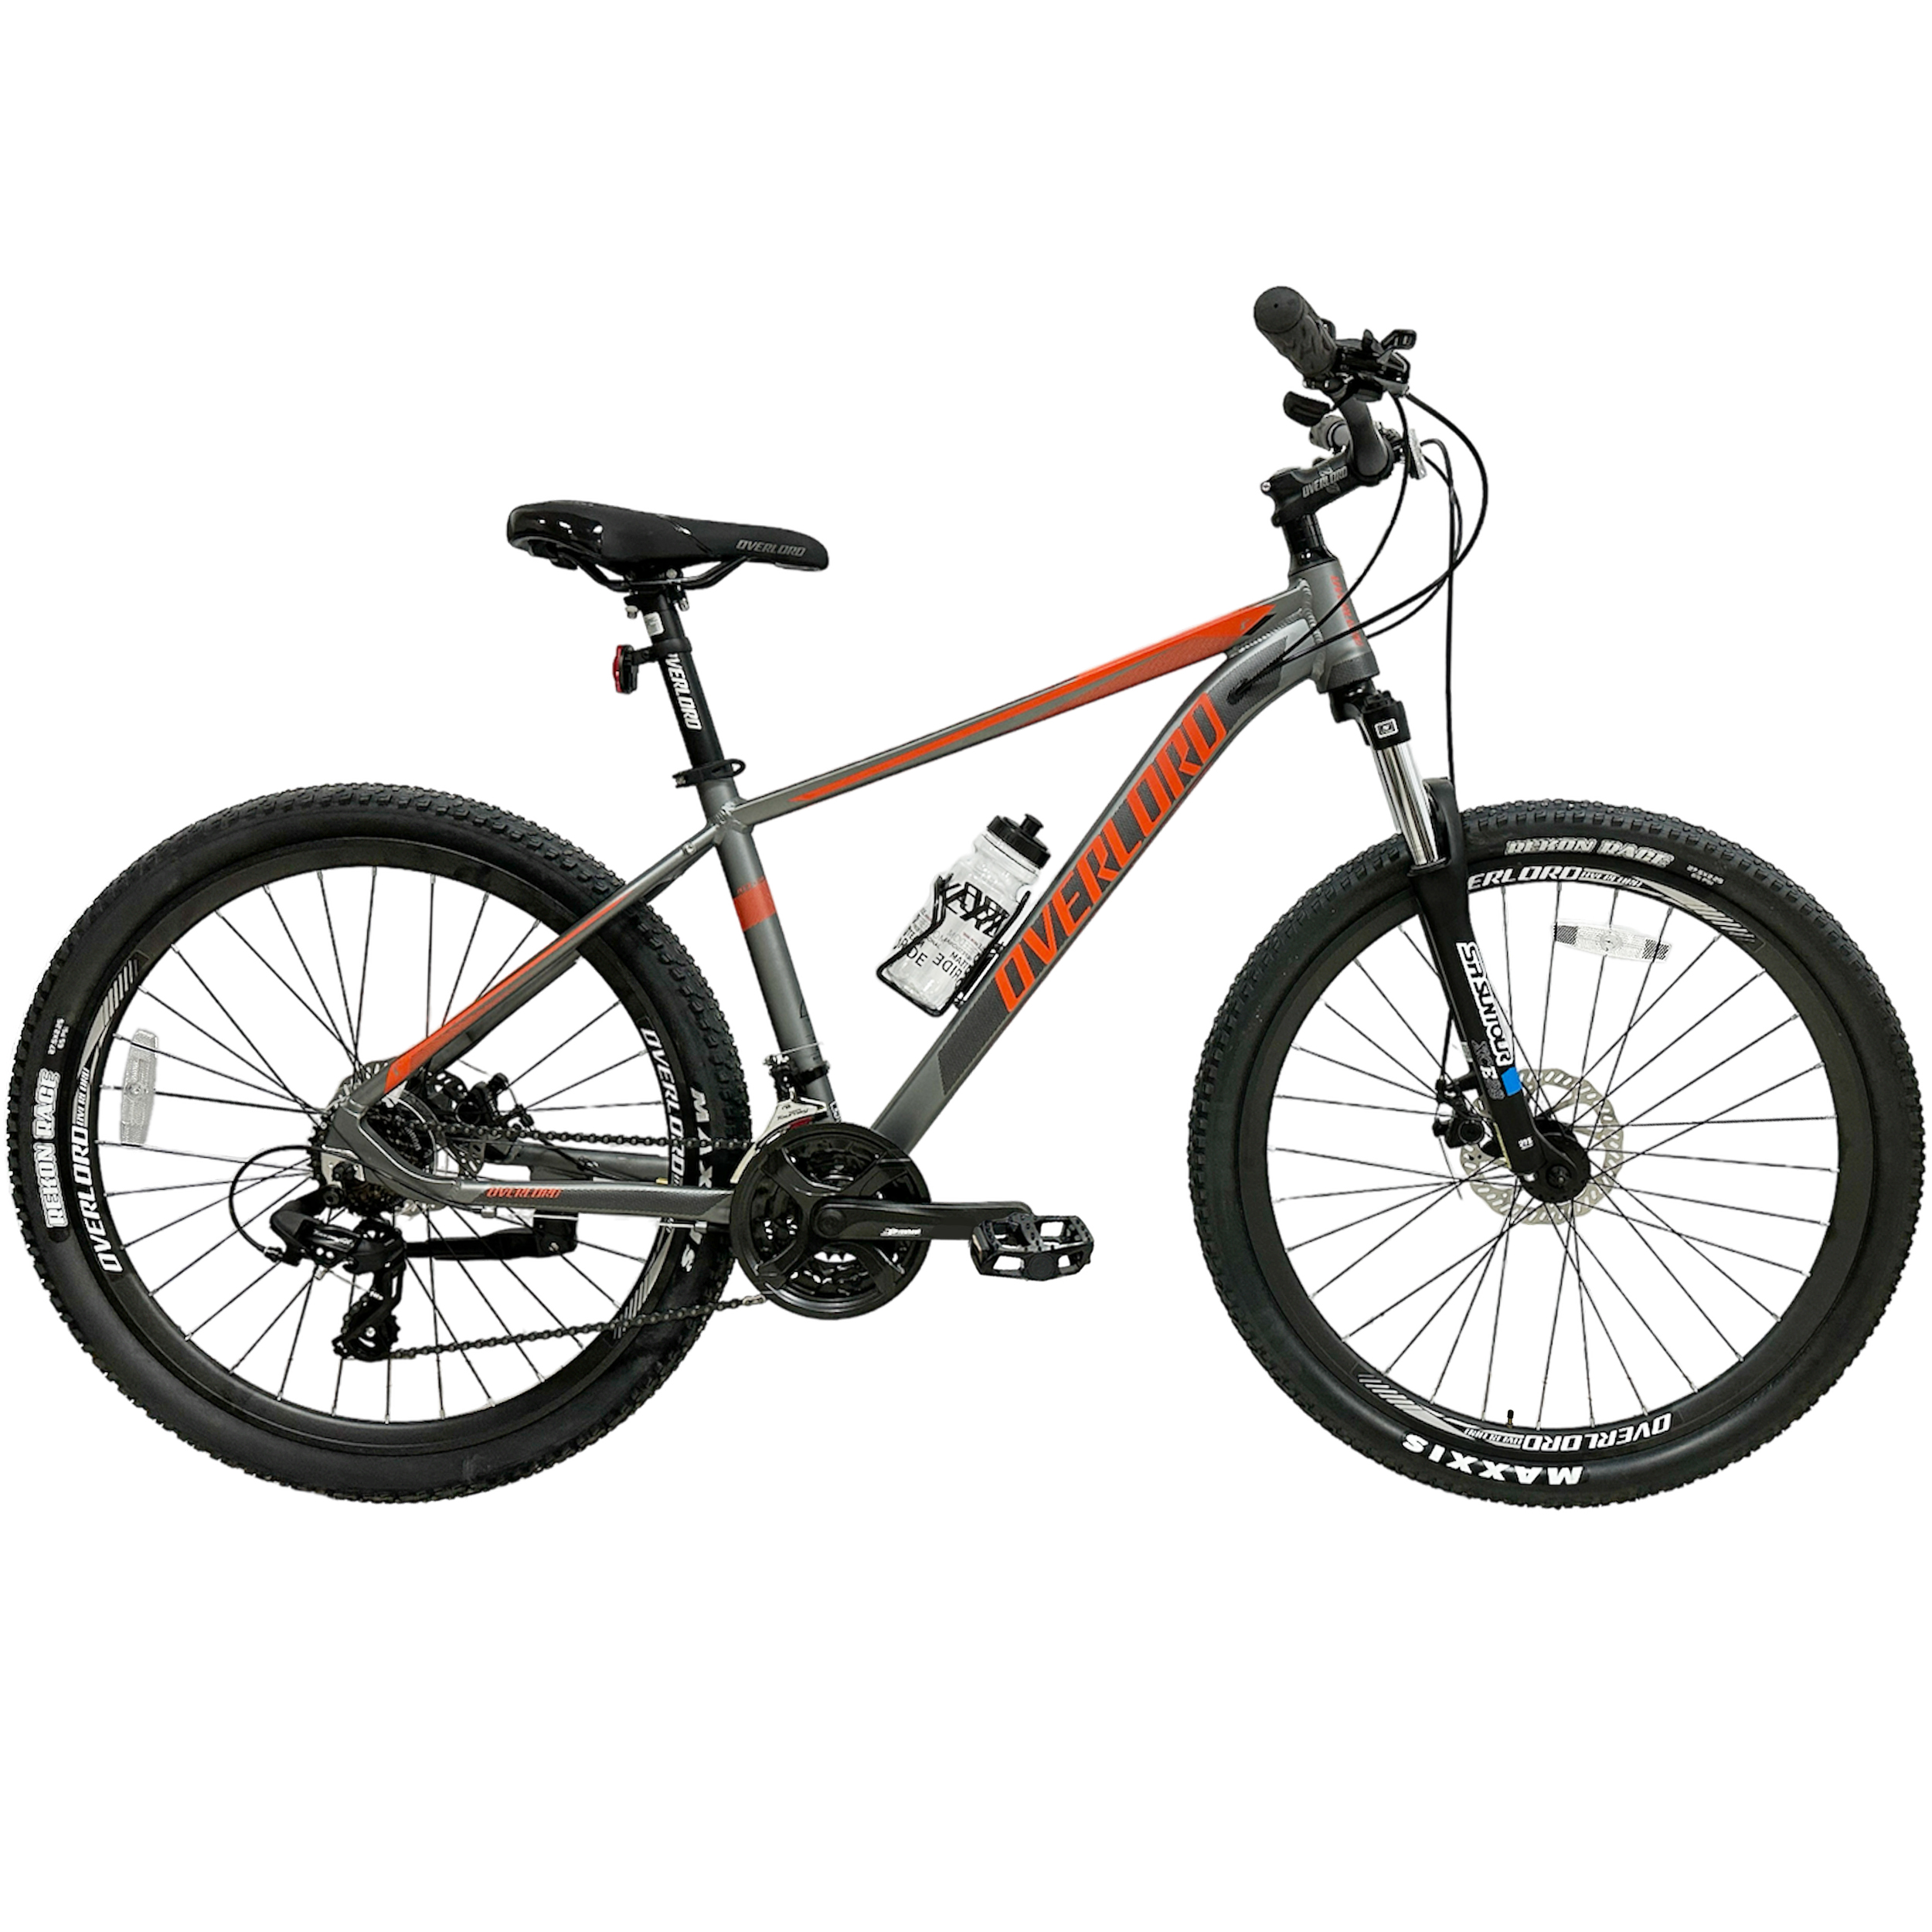 نکته خرید - قیمت روز دوچرخه کوهستان اورلورد مدل LEGEND ATX 1.0D سایز 27.5 خرید